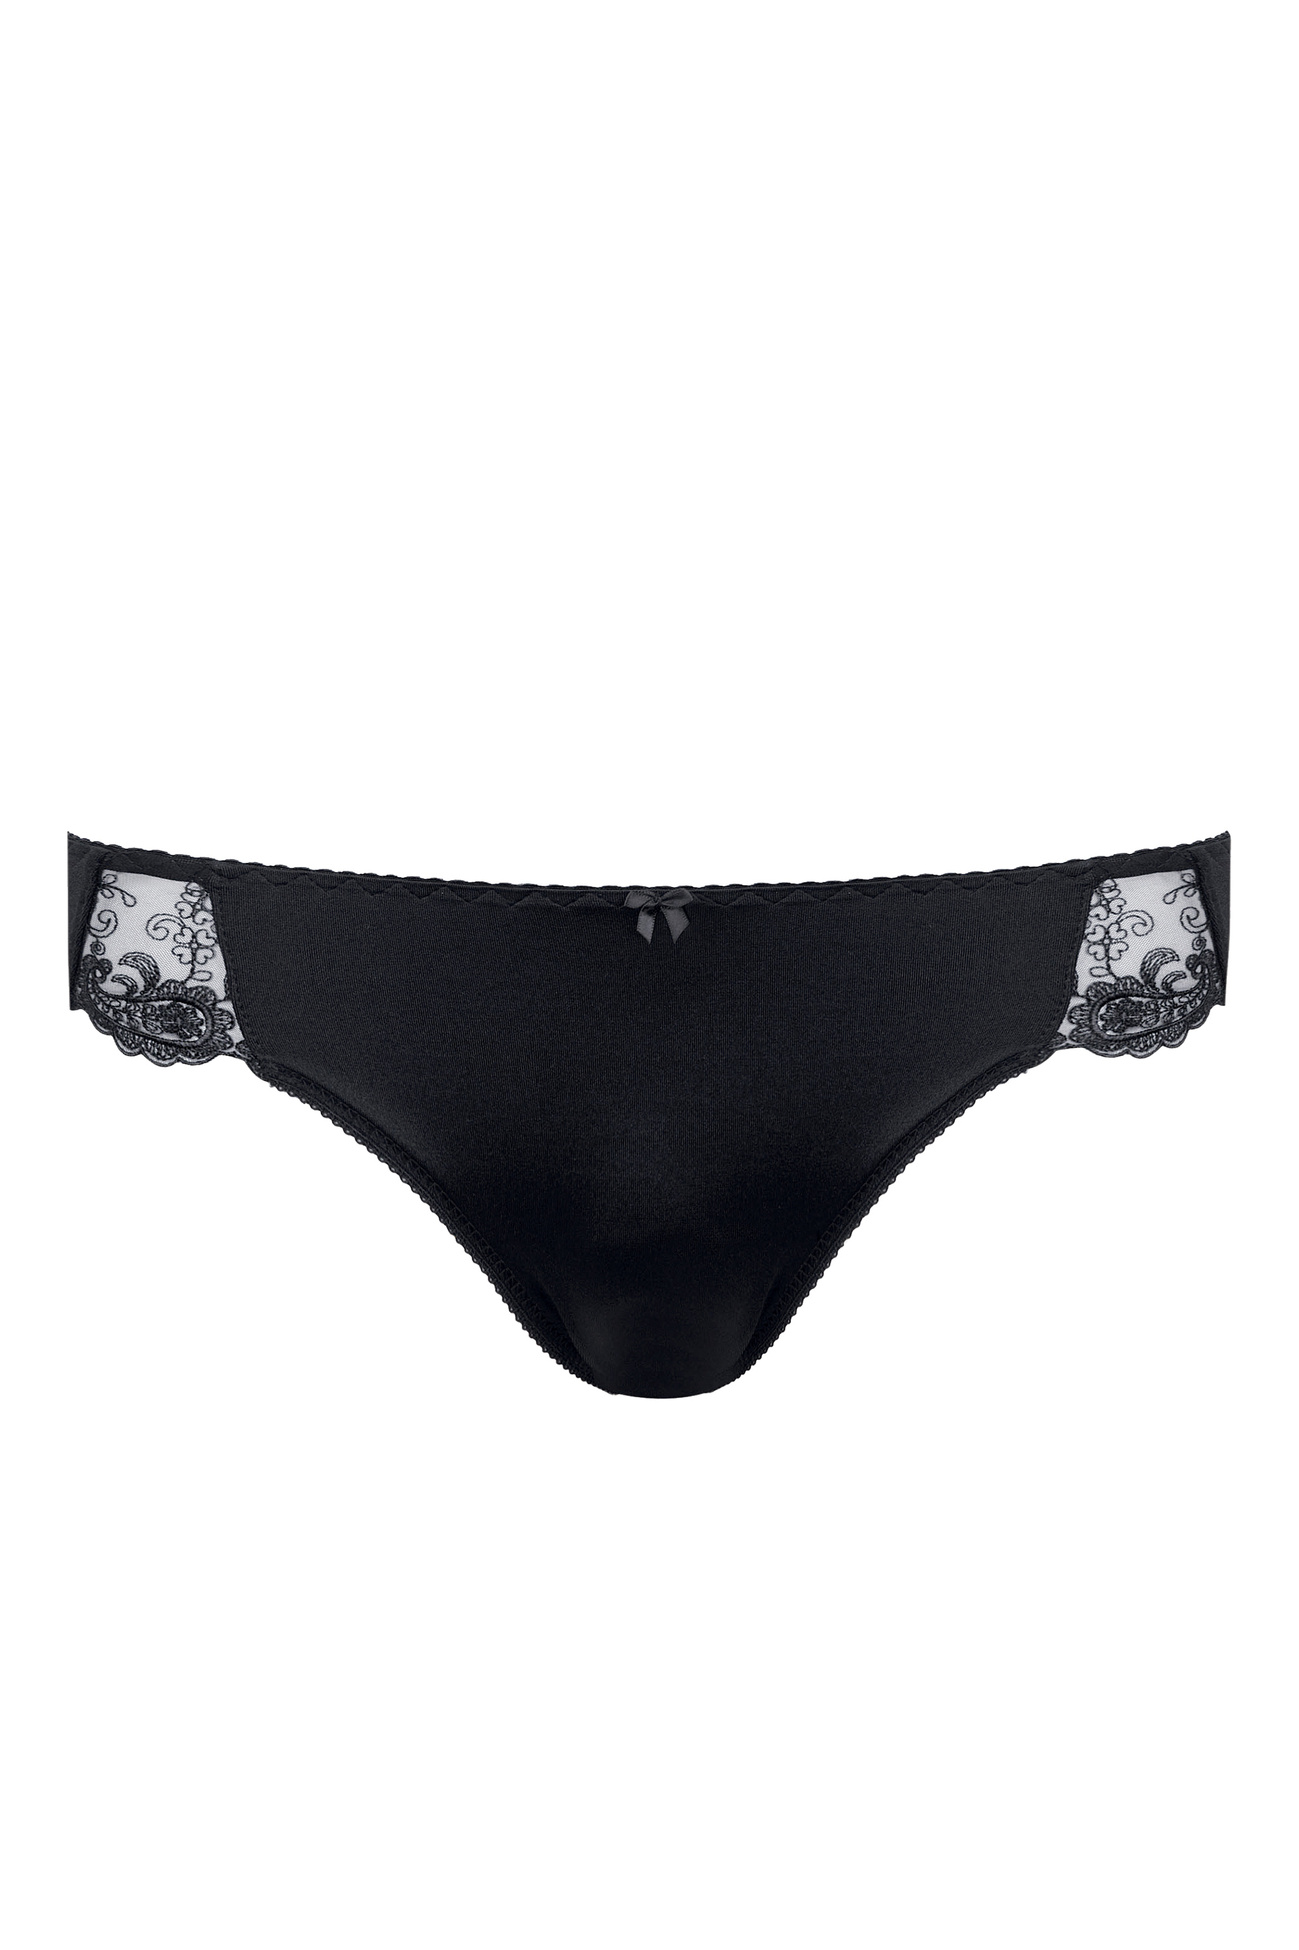 Yvette Sports Sports underwear for women, Buy online